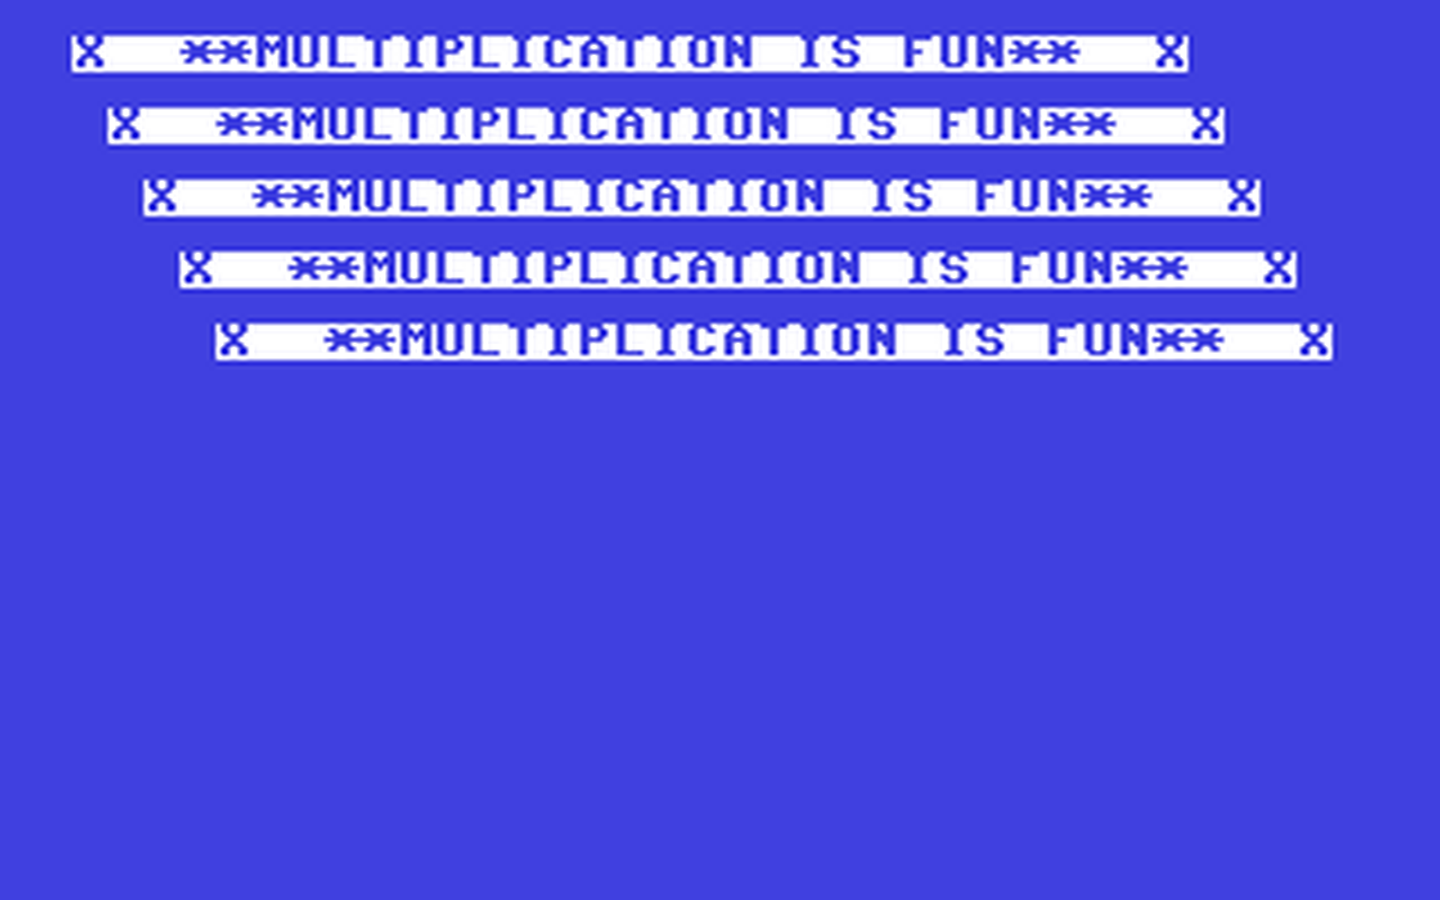 C64 GameBase Multiplication_is_Fun Argus_Press_Software_(APS)/64_Tape_Computing 1985